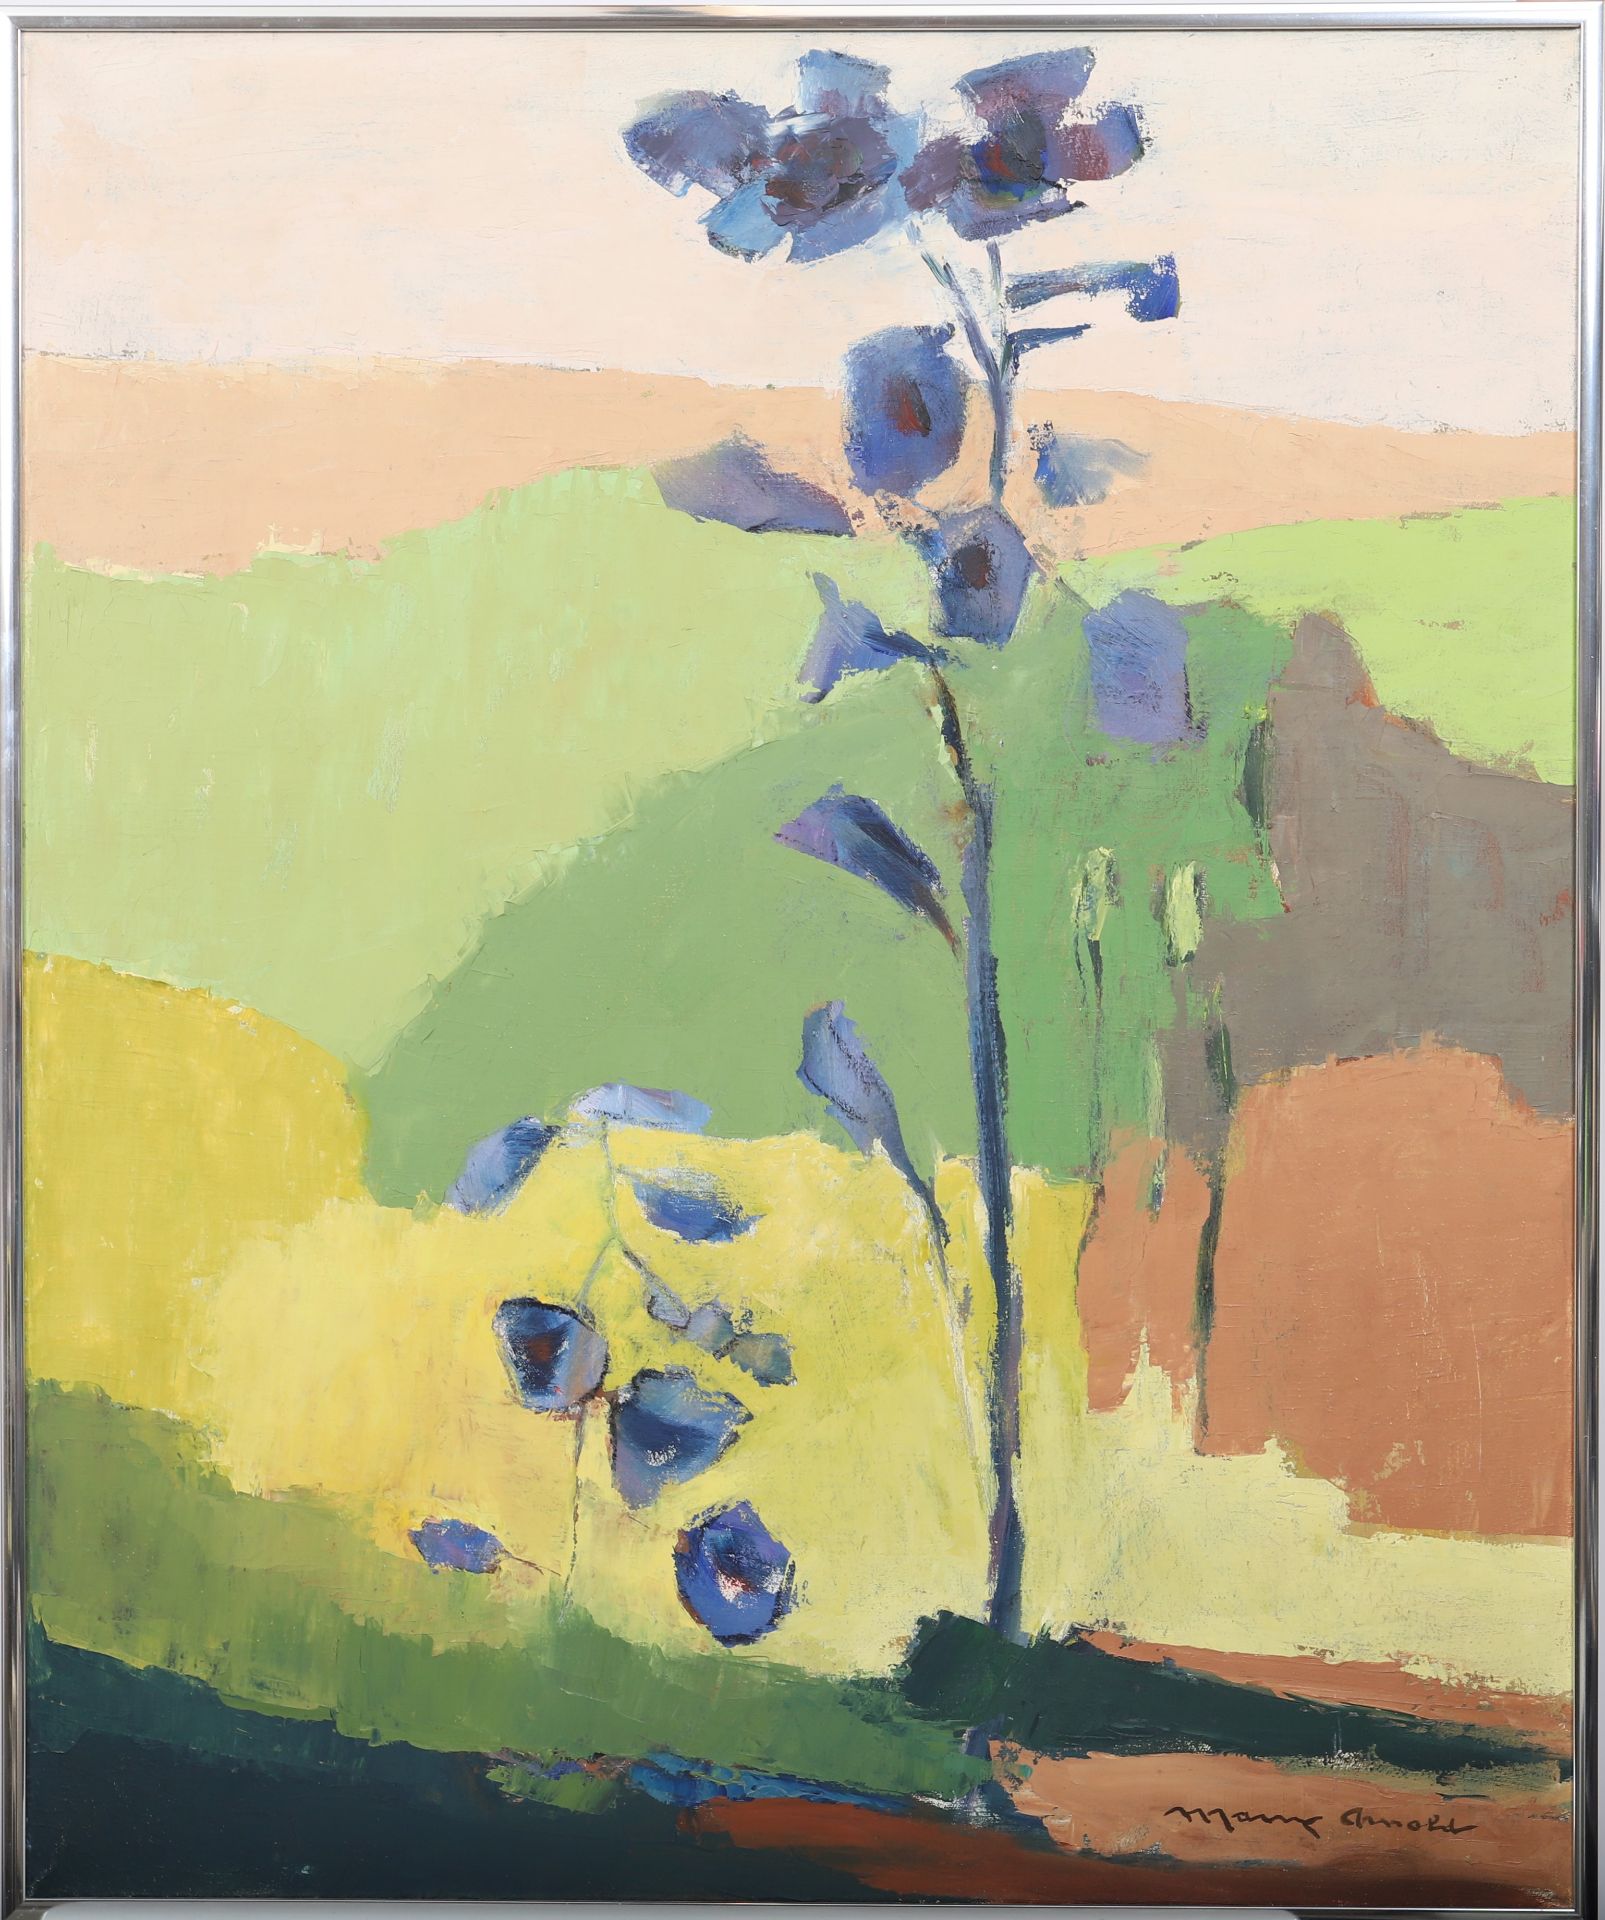 "Fleur du pays" de Many Arnold-Leurs (1920-?) Artiste peintre Luxembourgeois, membre [...]